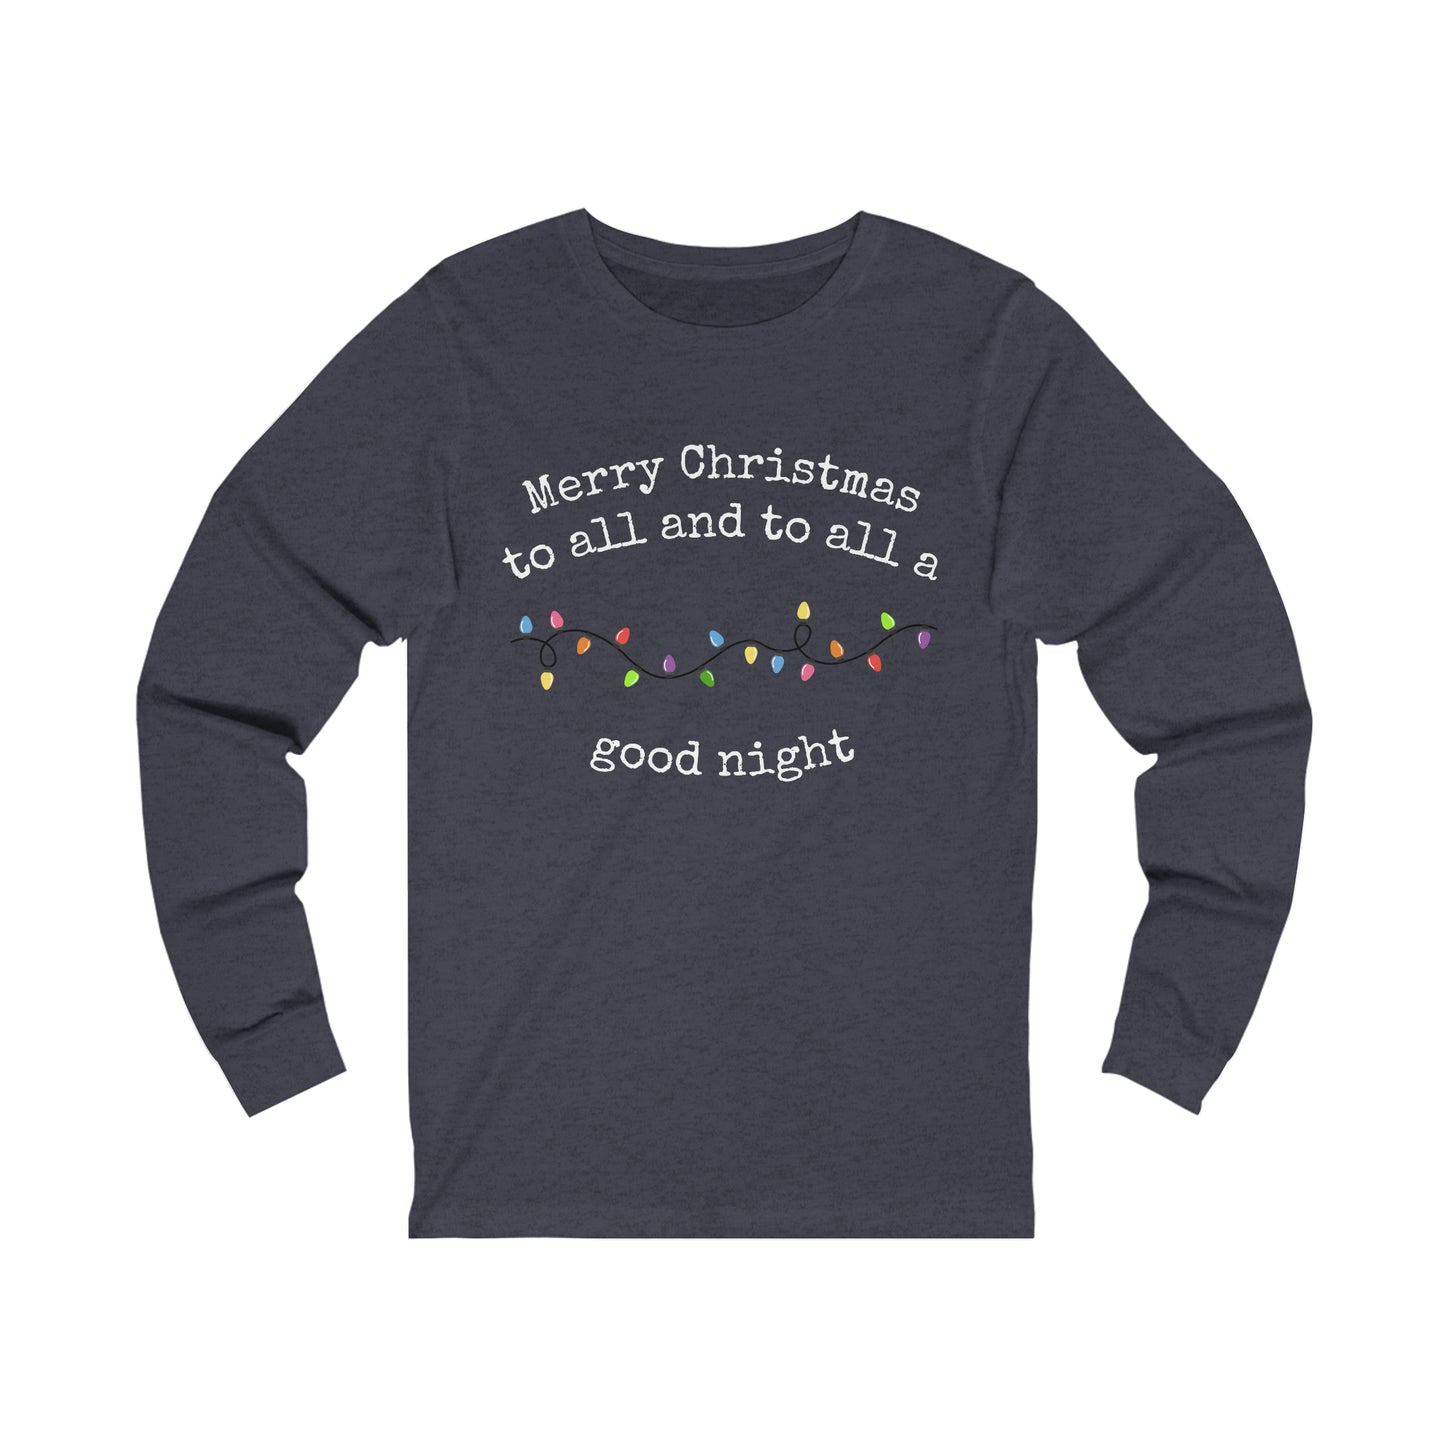 Unisex Jersey Long Sleeve Tee, Merry Christmas to All and to All a Good Night, Christmas Shirt, Christmas Pajama Shirt